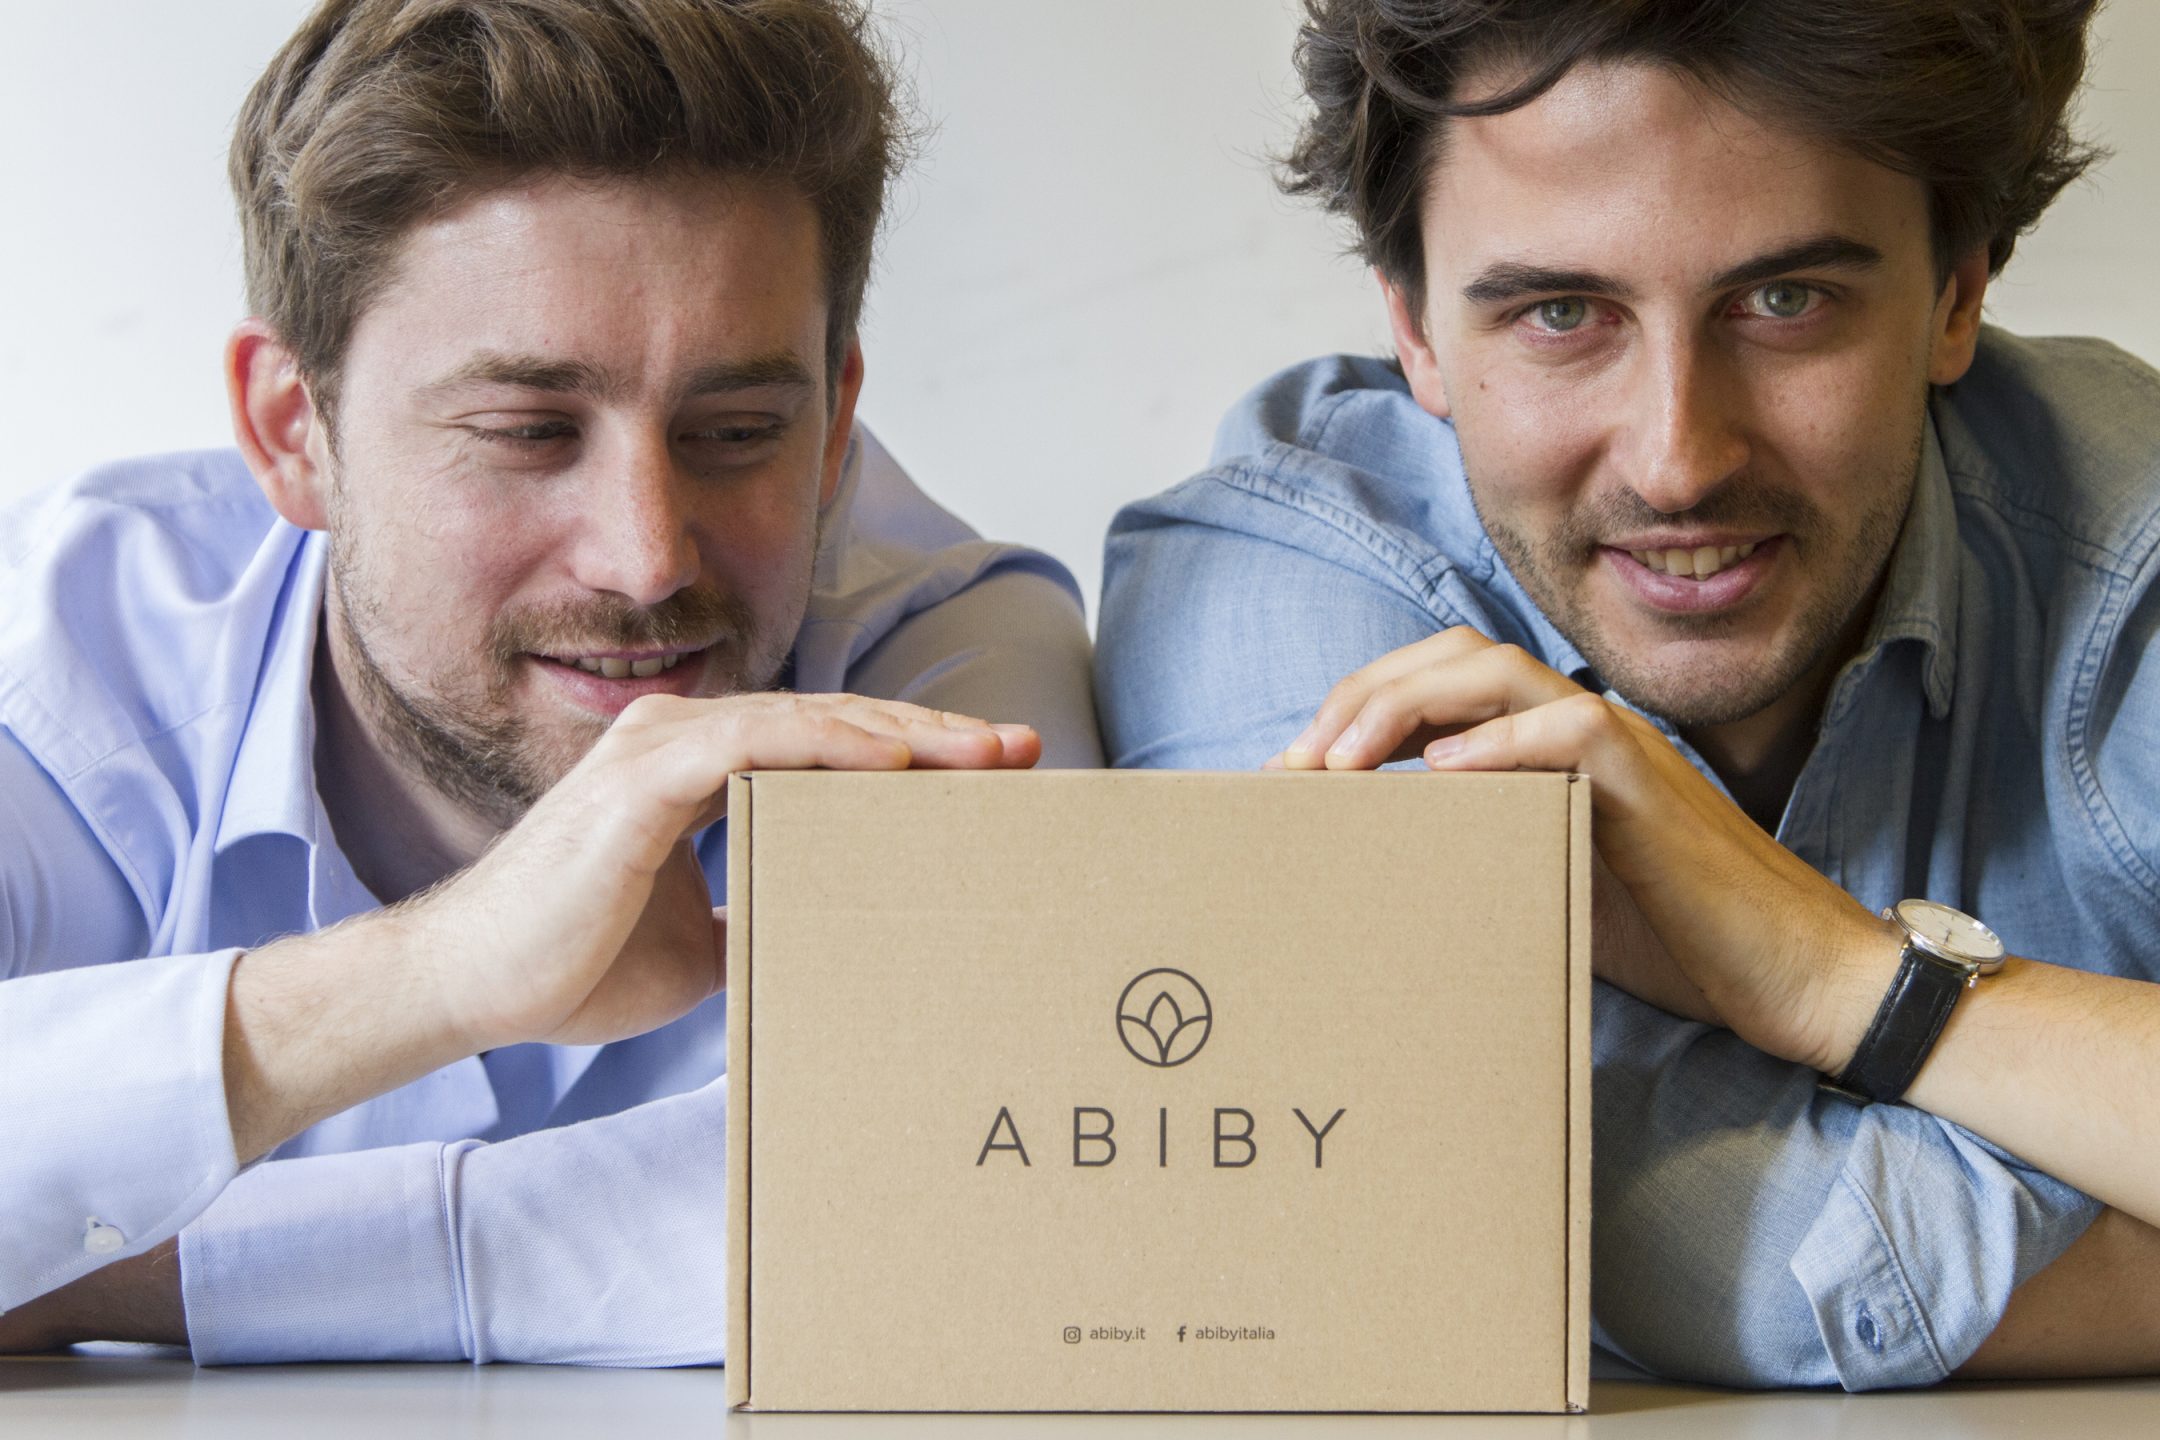 ego55 blog Branding di successo: l’esempio di Abiby, il servizio italiano di box subscriptions costruito grazie alle influencer